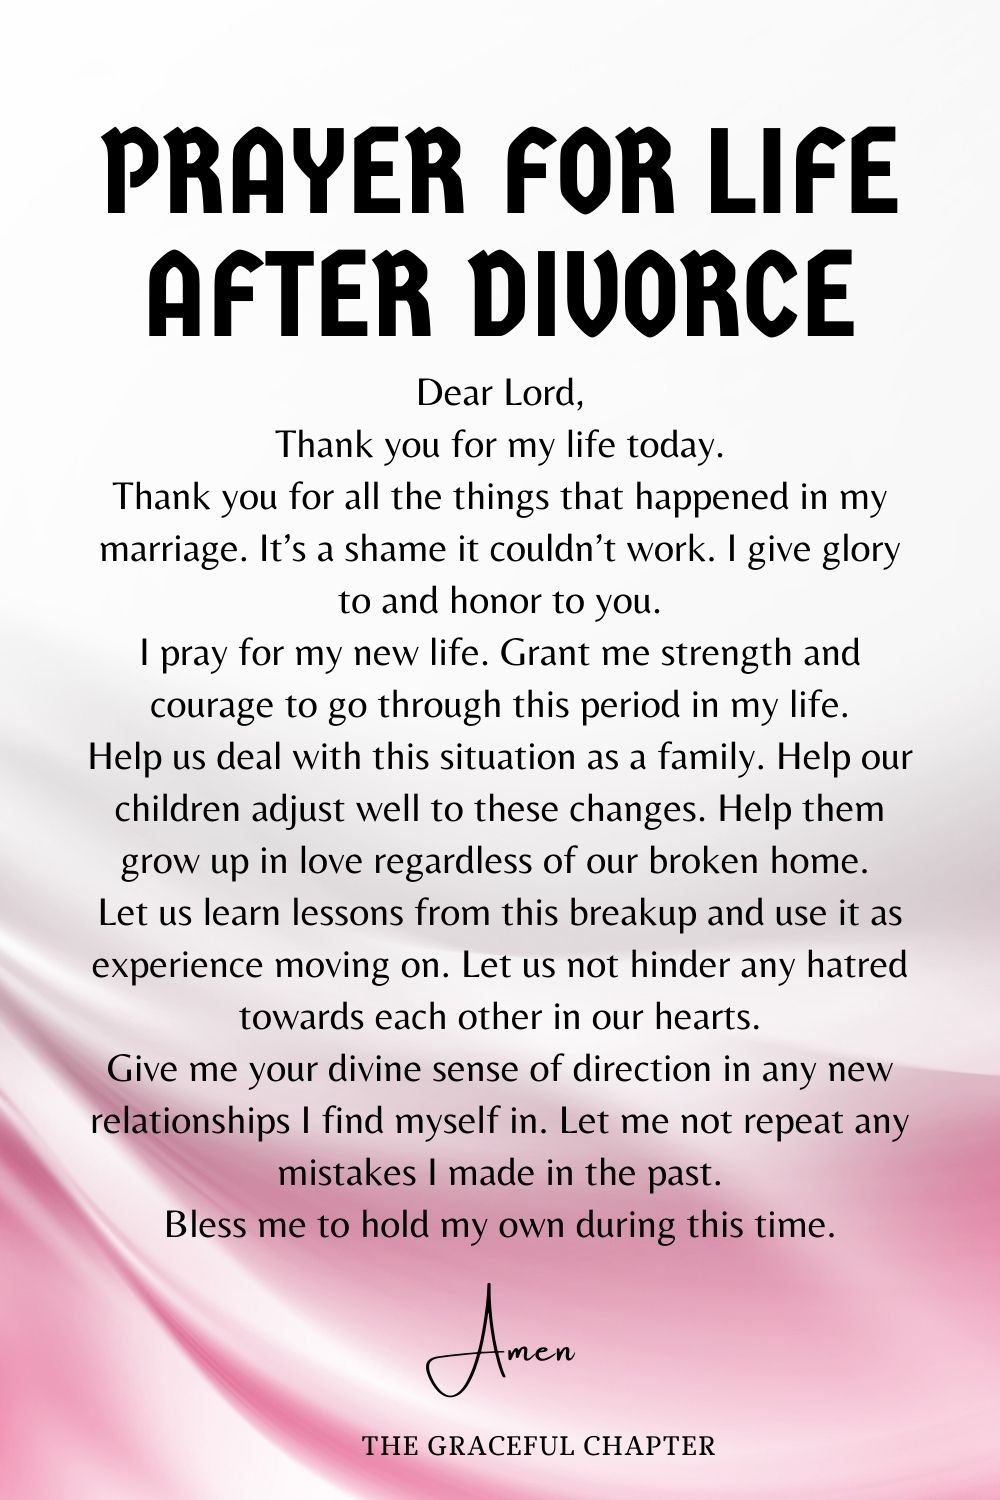 Prayer for life after divorce